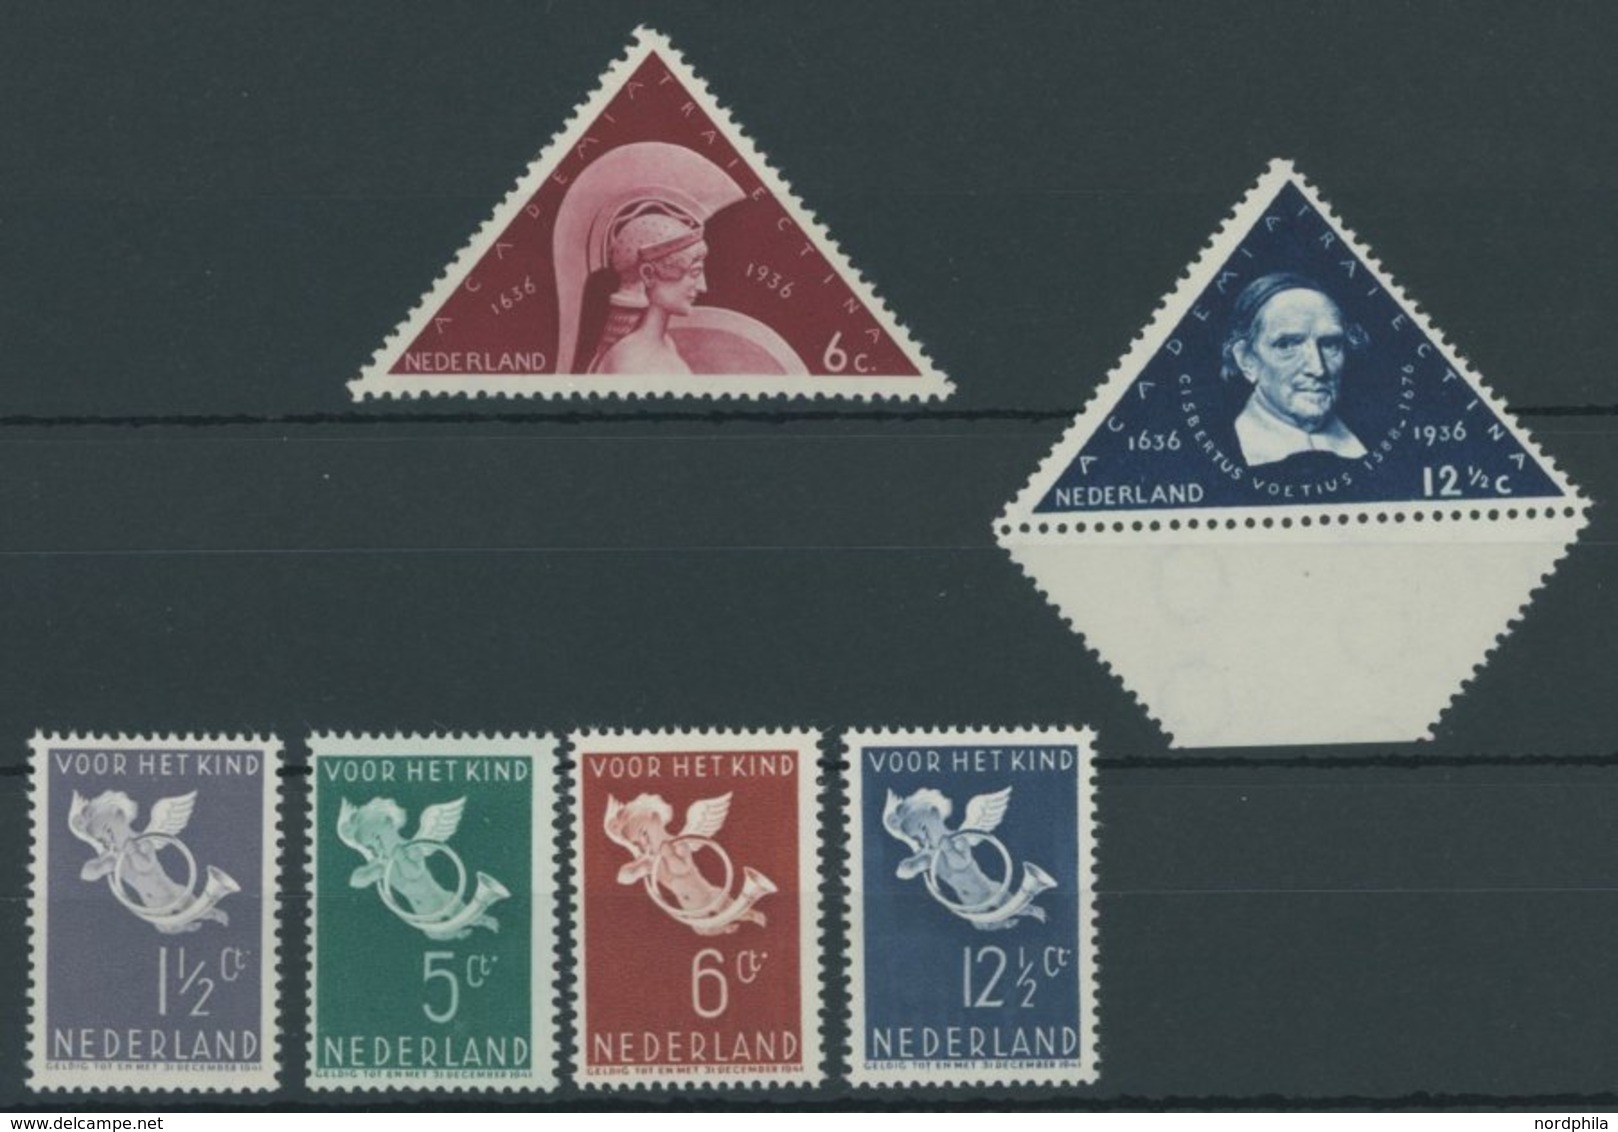 NIEDERLANDE 295-300 **, 1936, Universität Utrecht Und Vor Het Kind, 2 Postfrische Prachtsätze, Mi. 80.- - Used Stamps